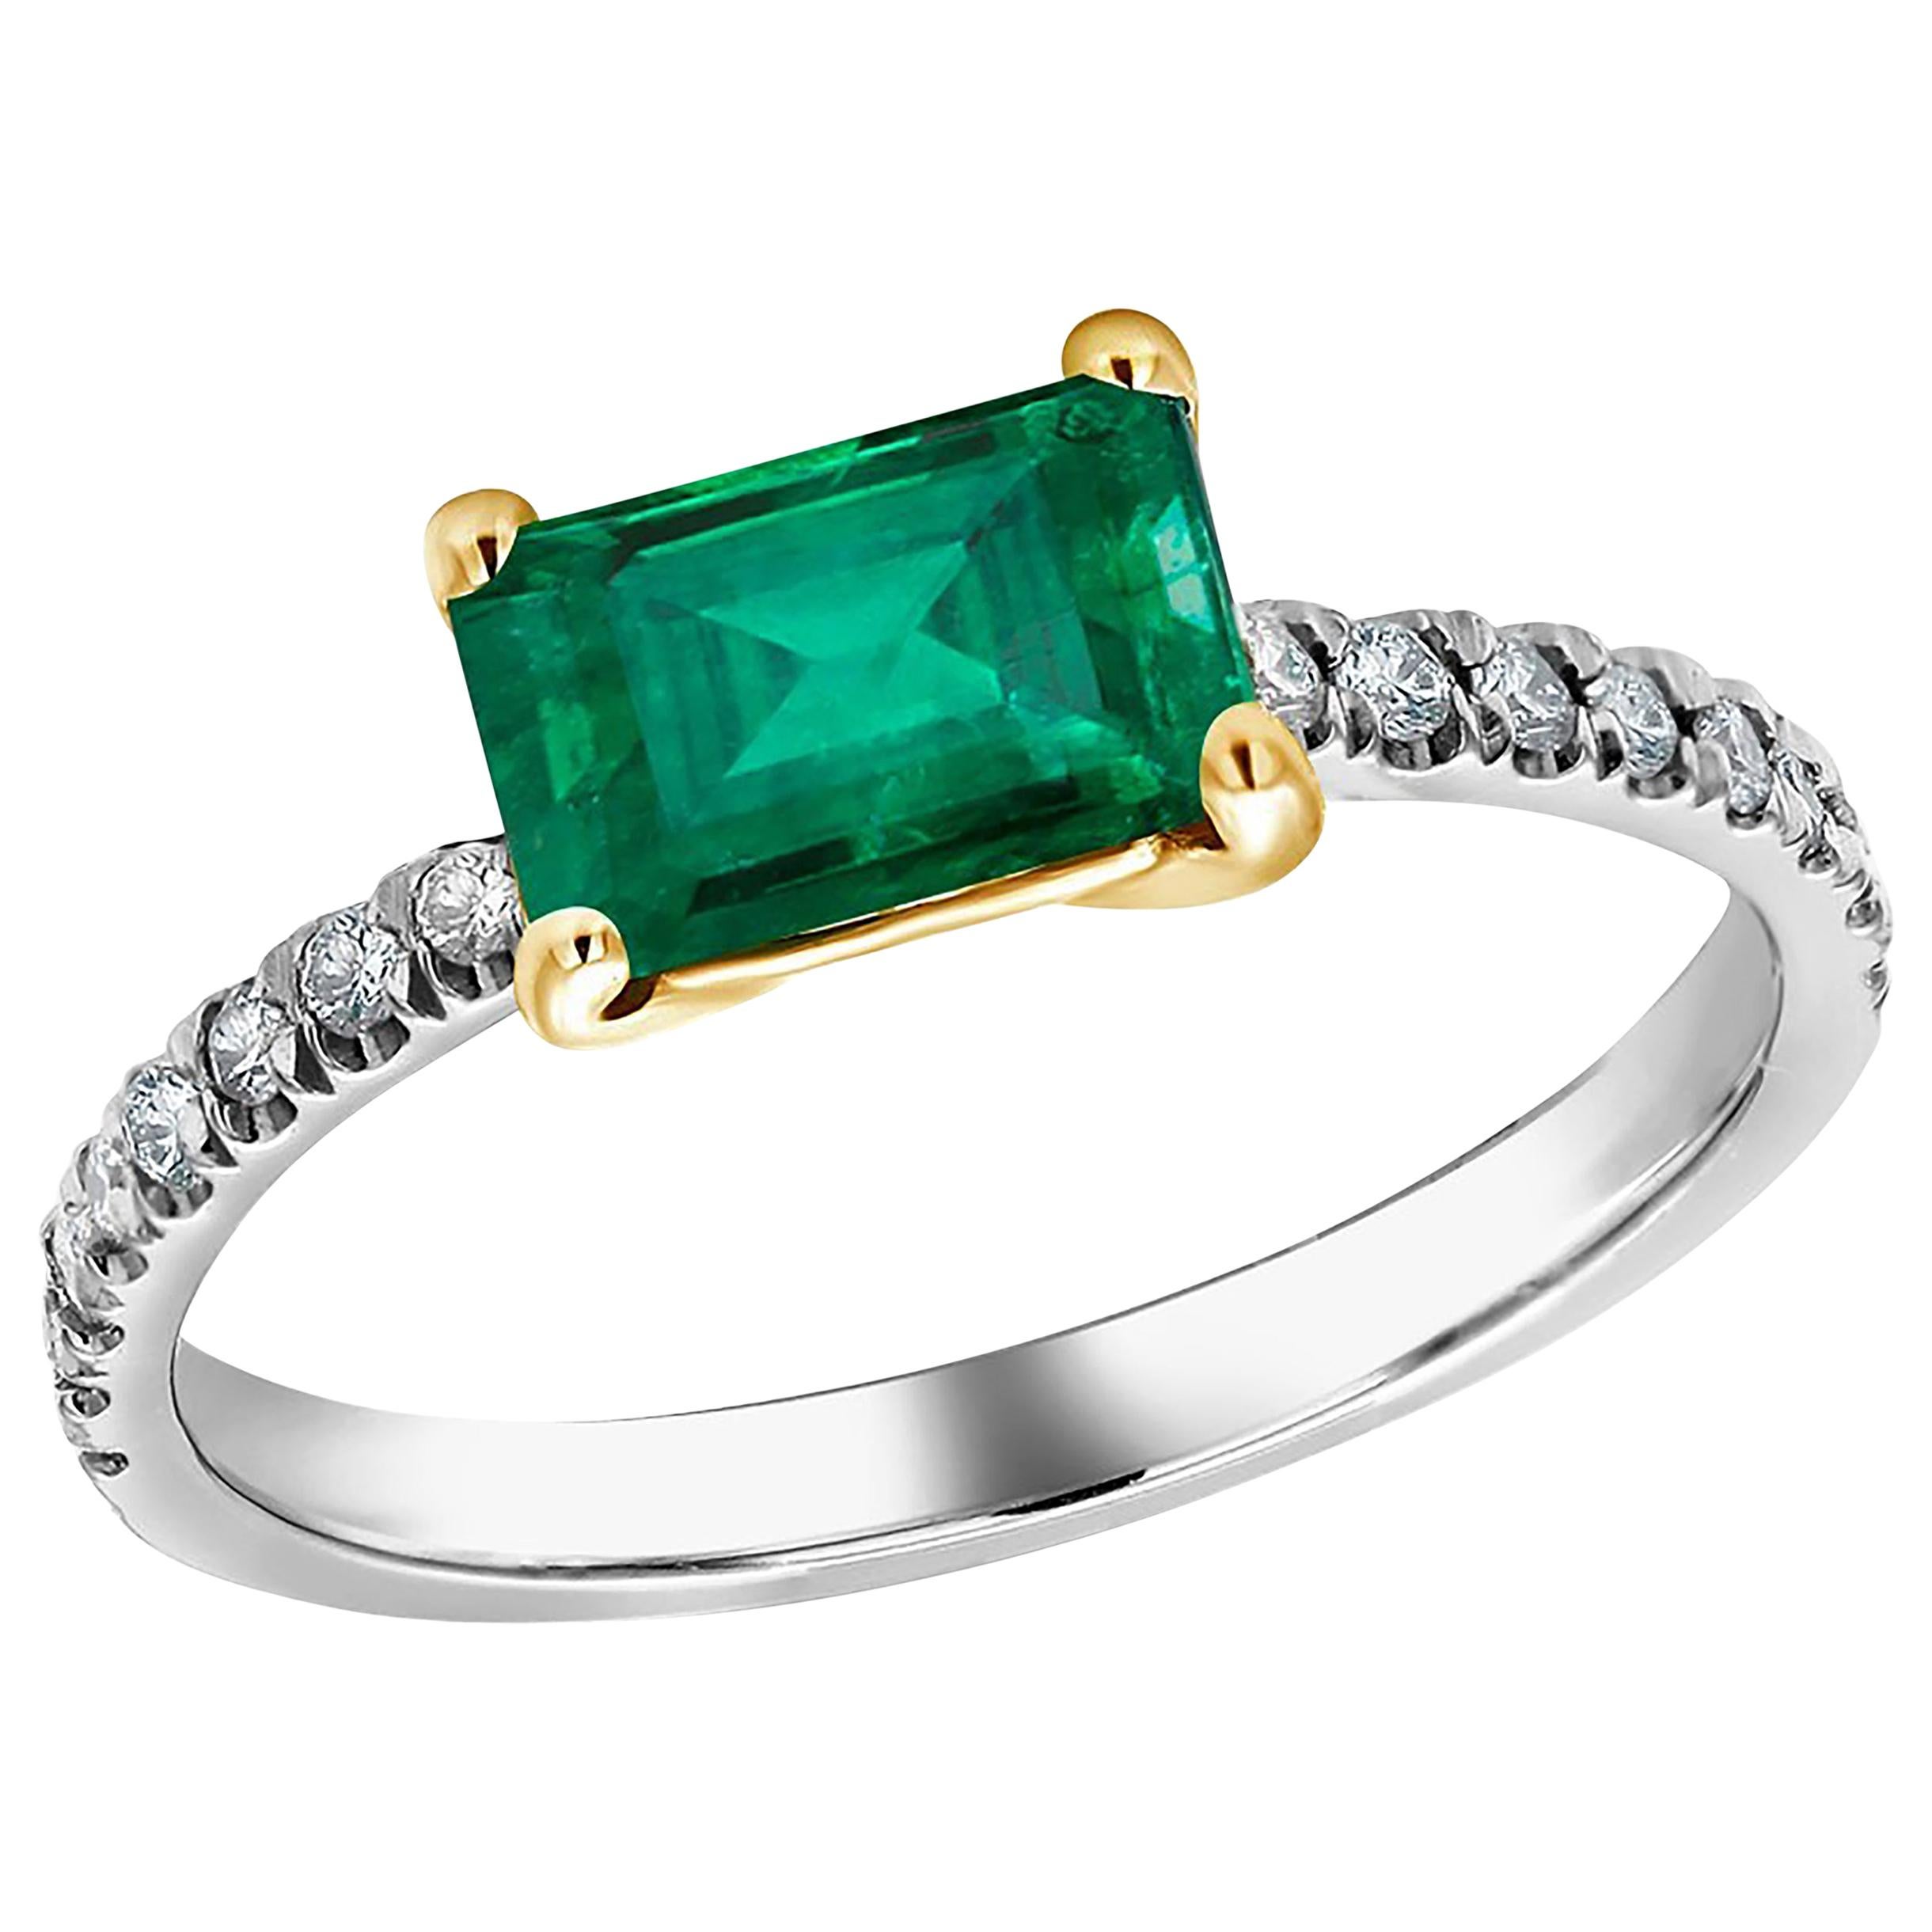 18 Karat Gold Columbia Emerald Diamond Cocktail Ring Weighing 1.70 Carat